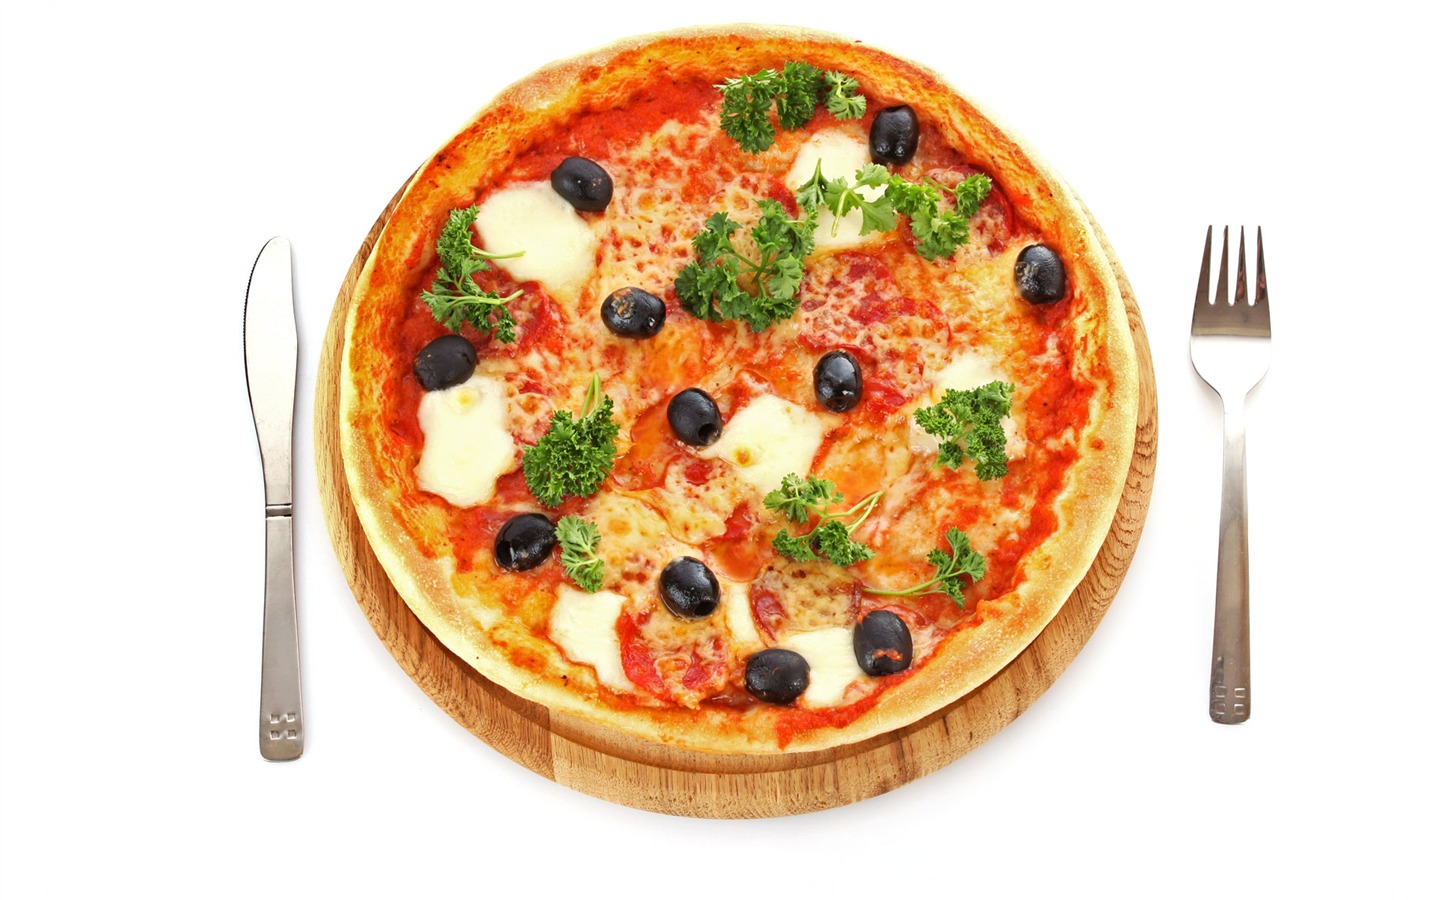 Fondos de pizzerías de Alimentos (4) #9 - 1440x900